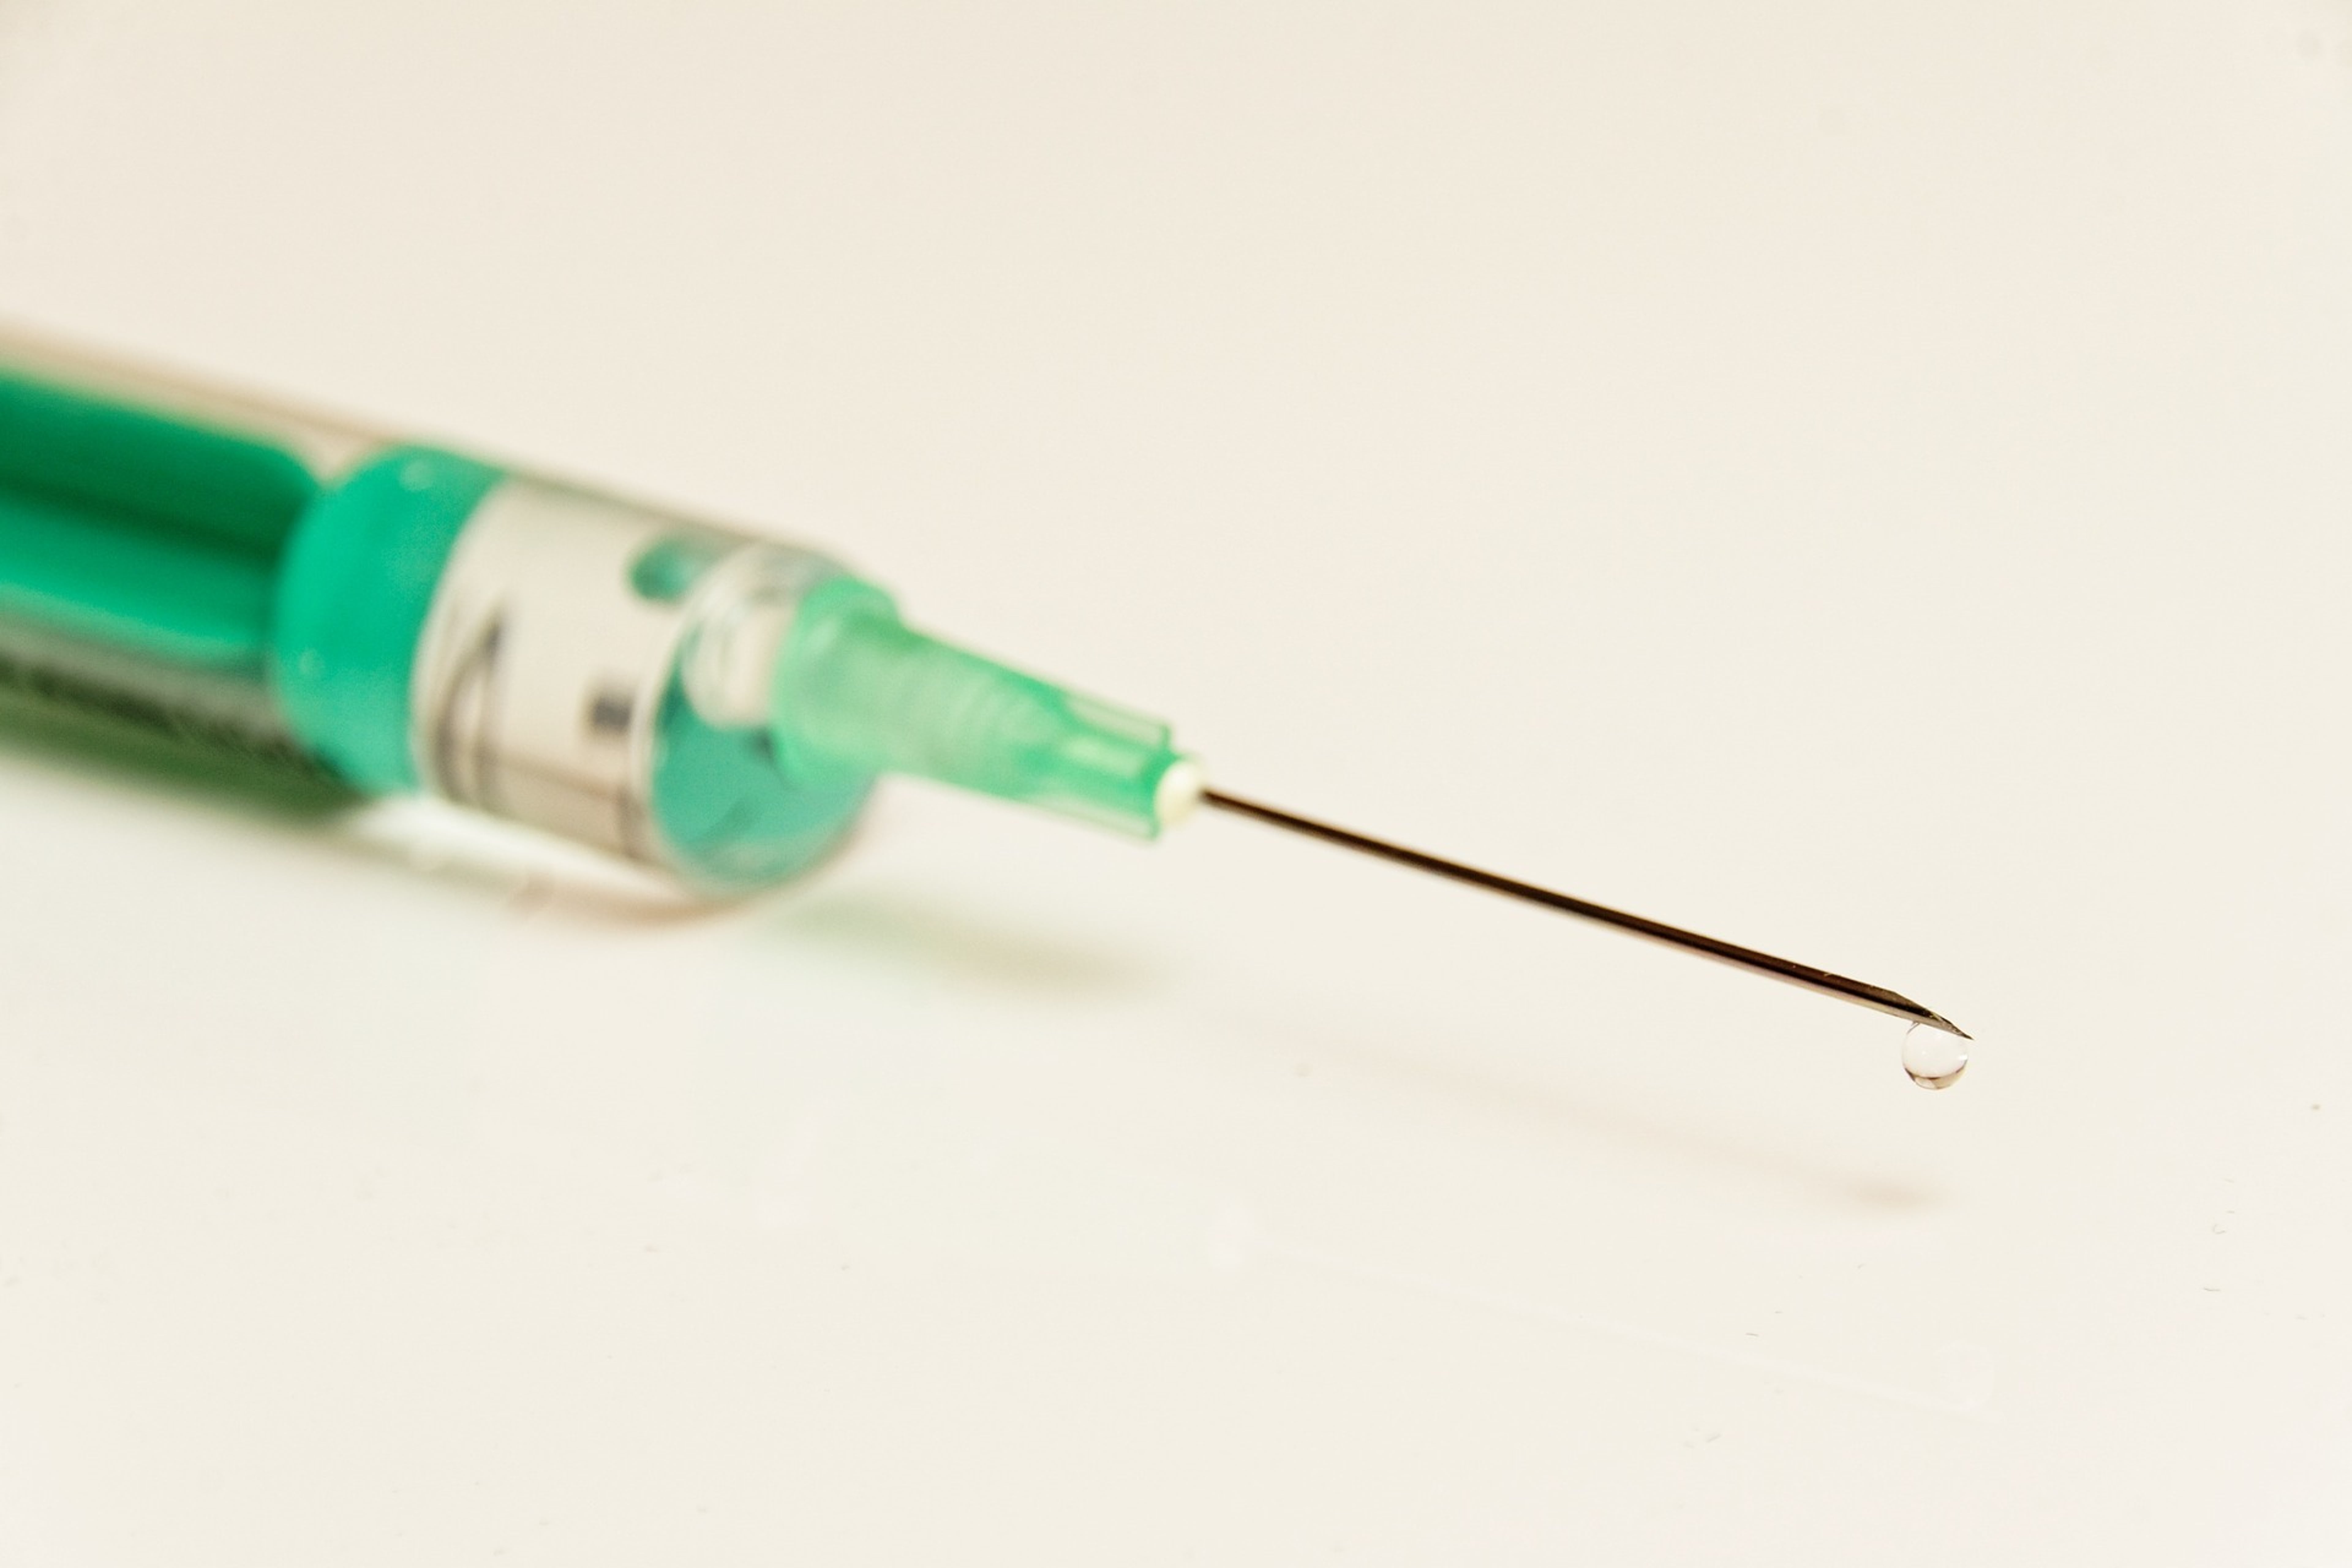 3 Moderna Analyst Takes On The Coronavirus Vaccine Developer&#39;s Pipeline